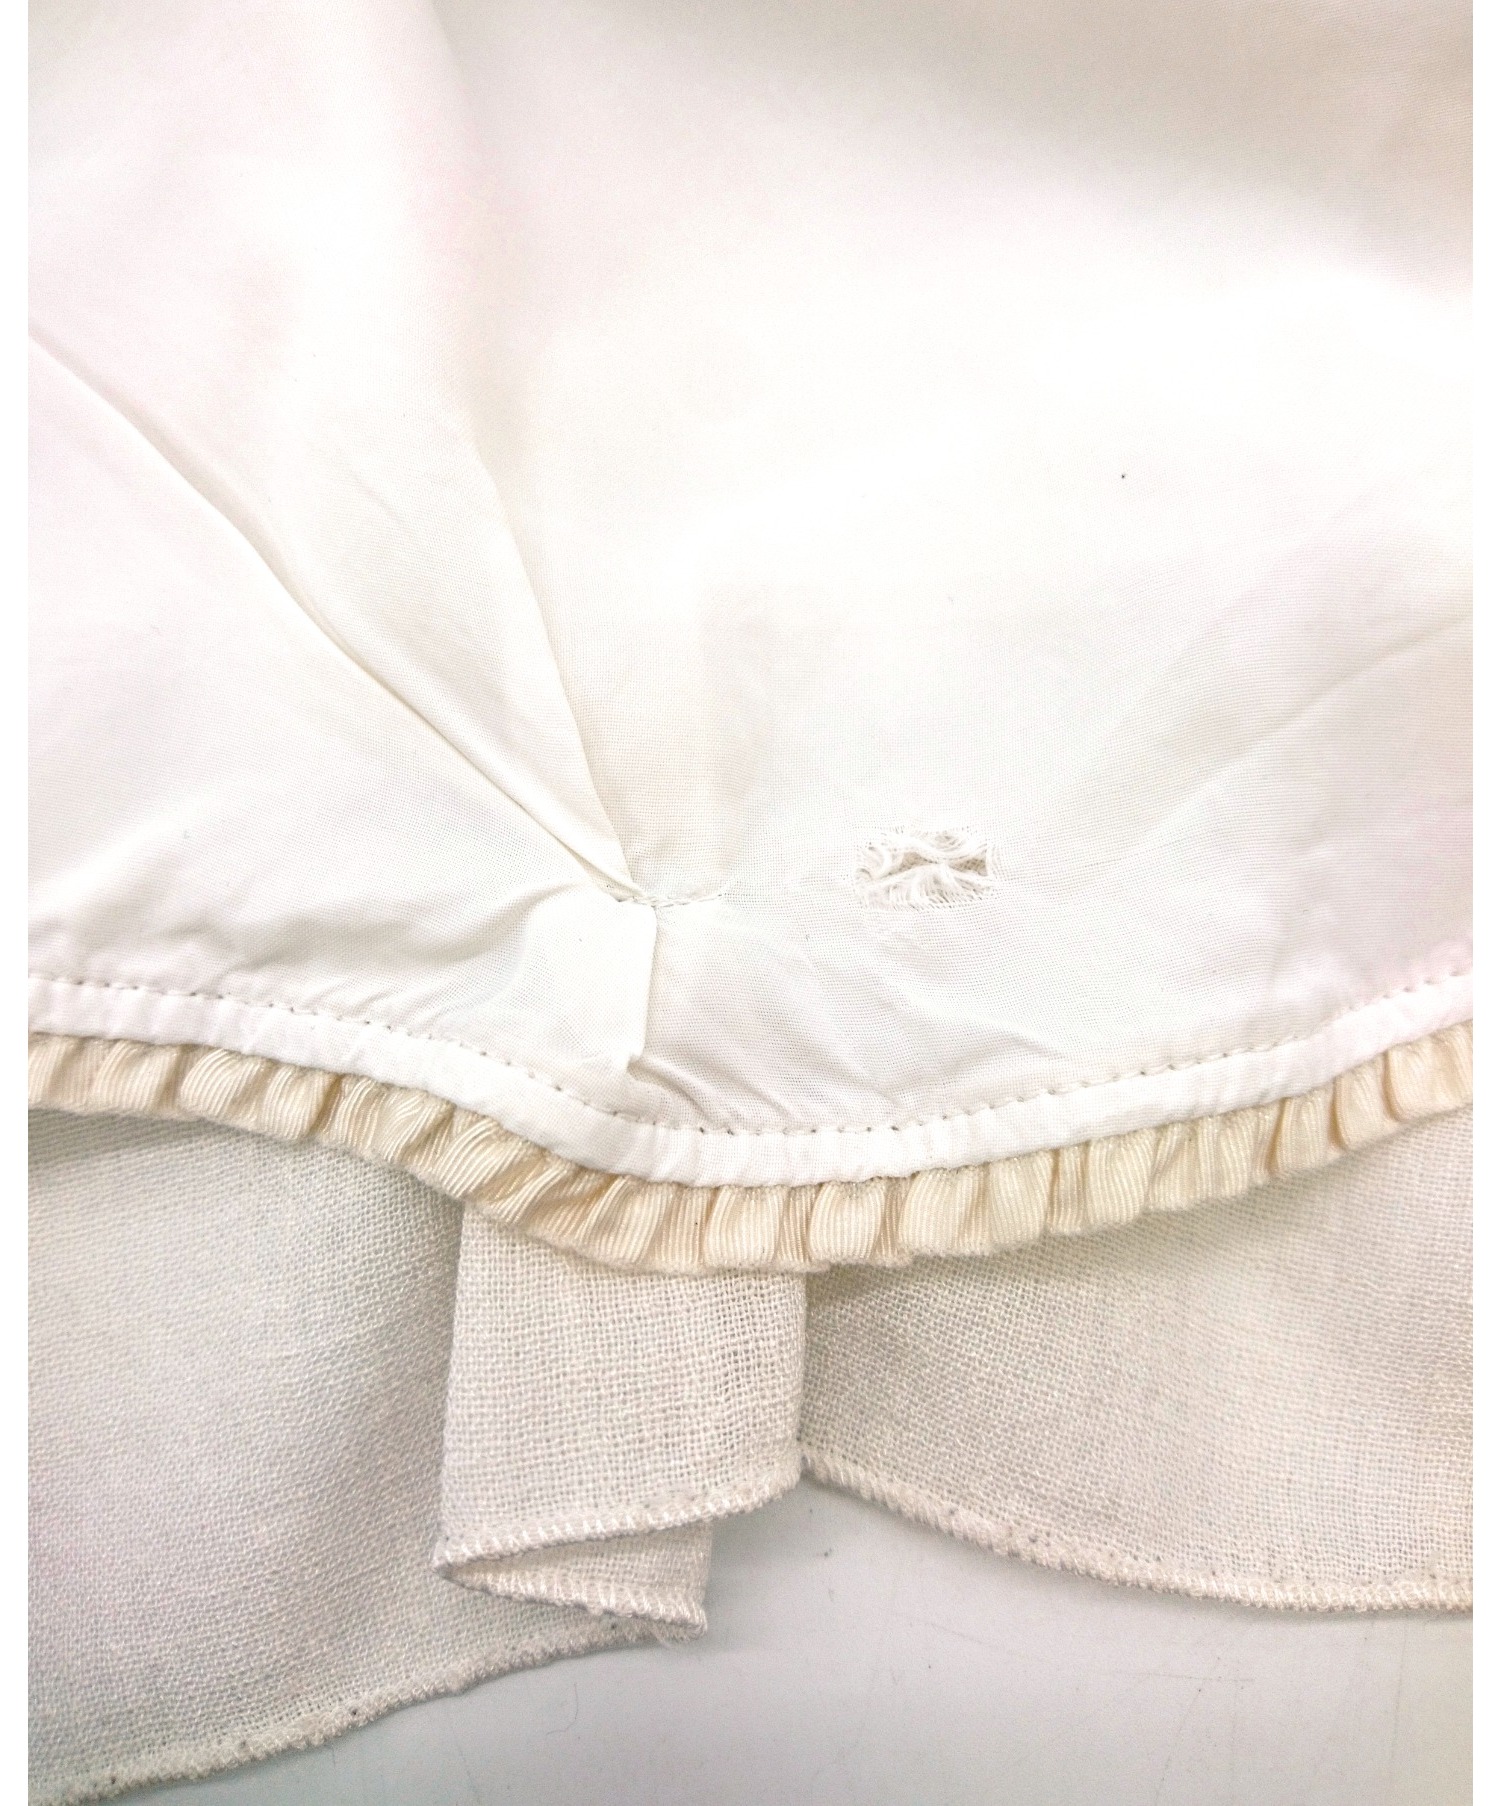 2343円 【返品不可】 デイジーリンパリ フォクシー 日本製 スカート 40 クリーム DAISYLINPARIS FOXEY バックジップ レディース